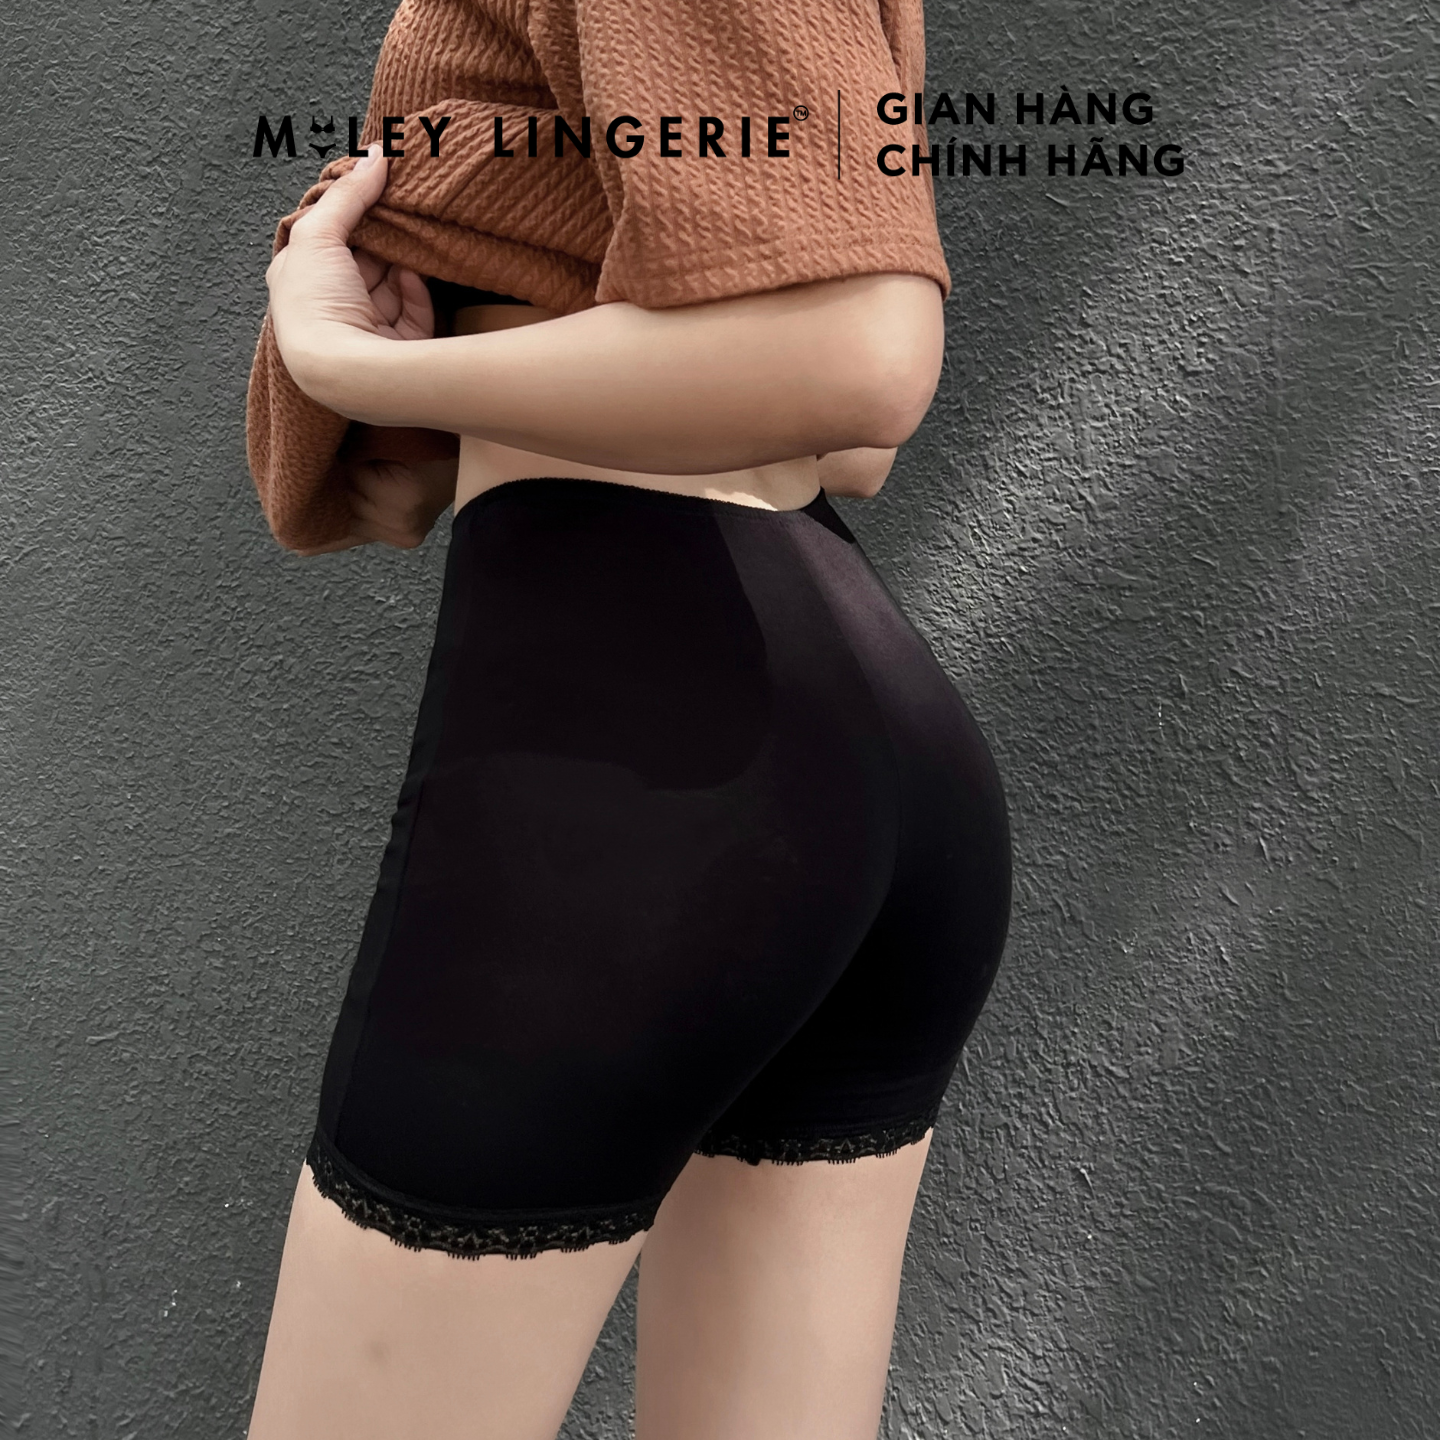 Hình ảnh Quần Đùi Lót Nữ Mặc Trong Chân Váy Dài 32cm Miley Lingerie - Màu Đen FDS0116